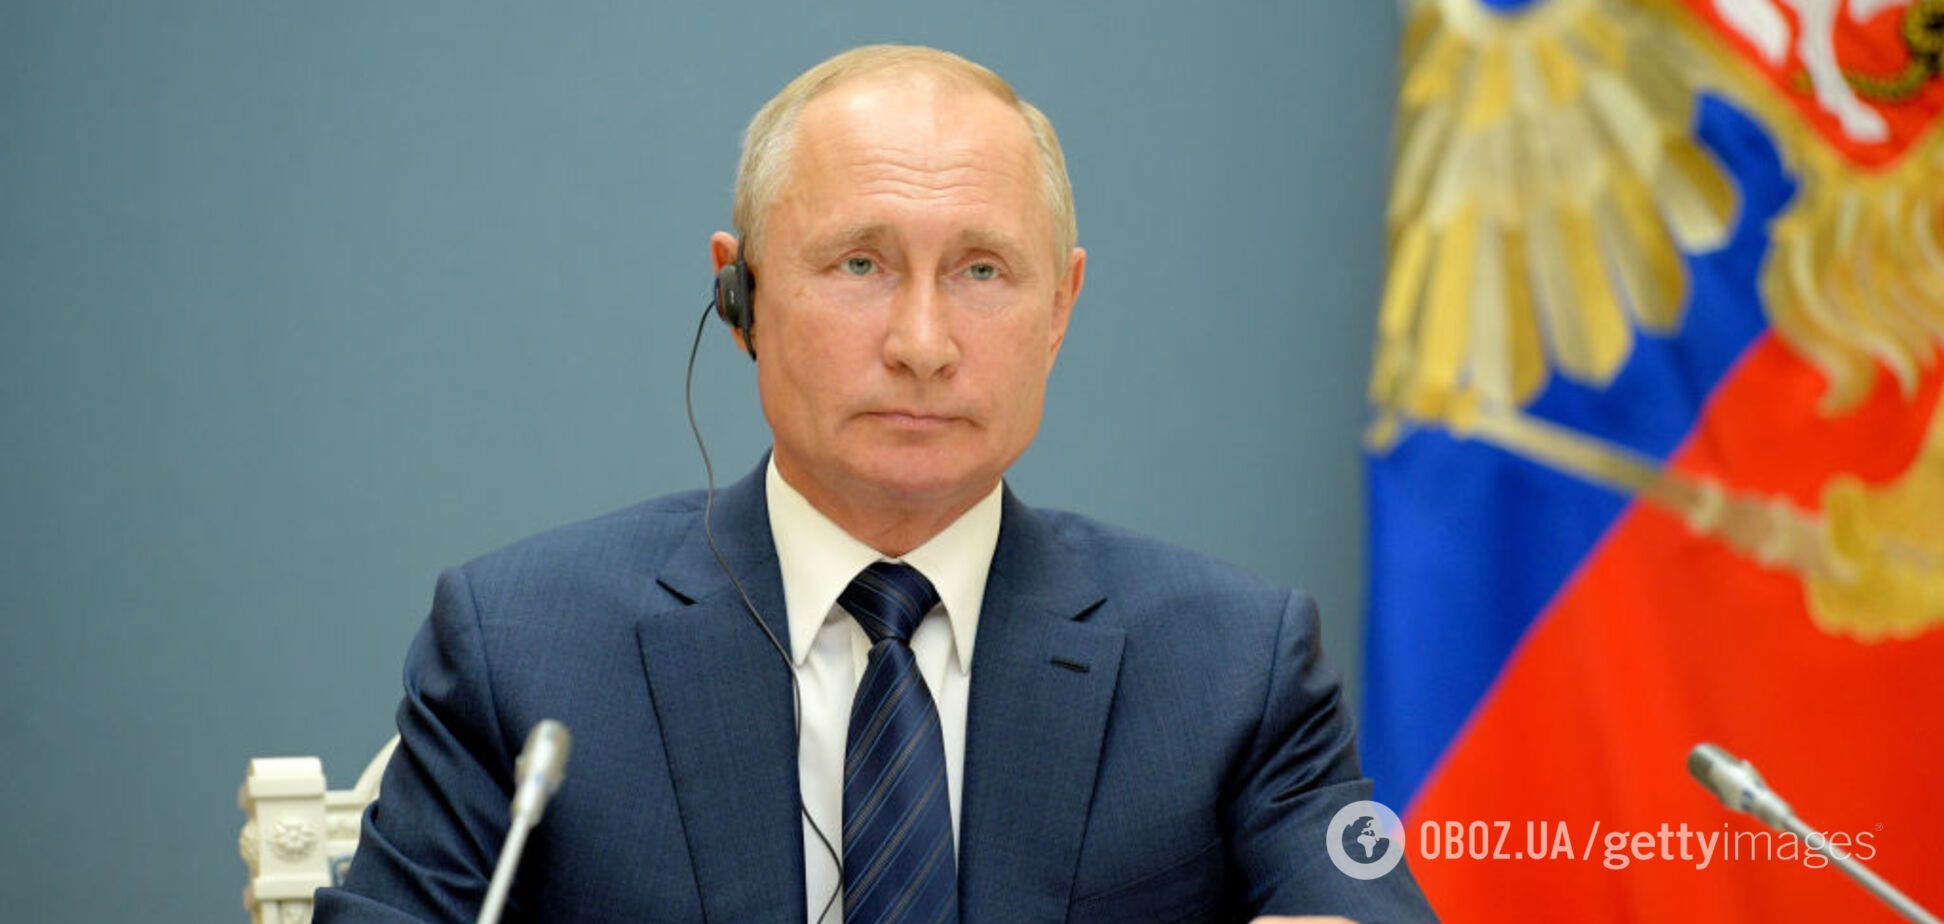 У Путіна назвали обнулення термінів 'тріумфом довіри'